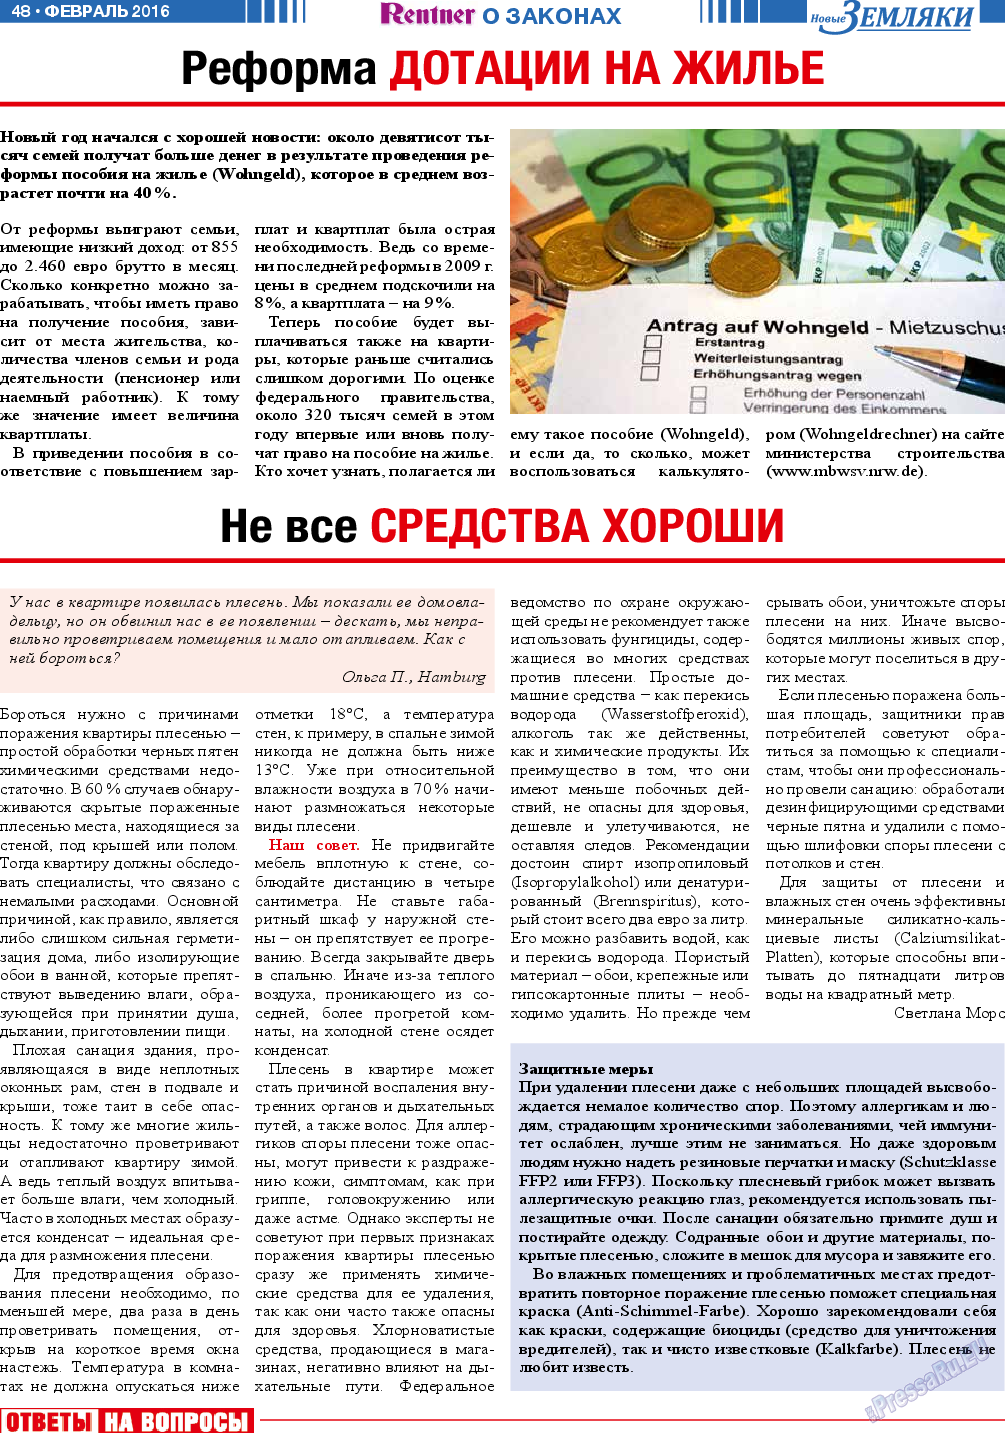 Новые Земляки (газета). 2016 год, номер 2, стр. 48